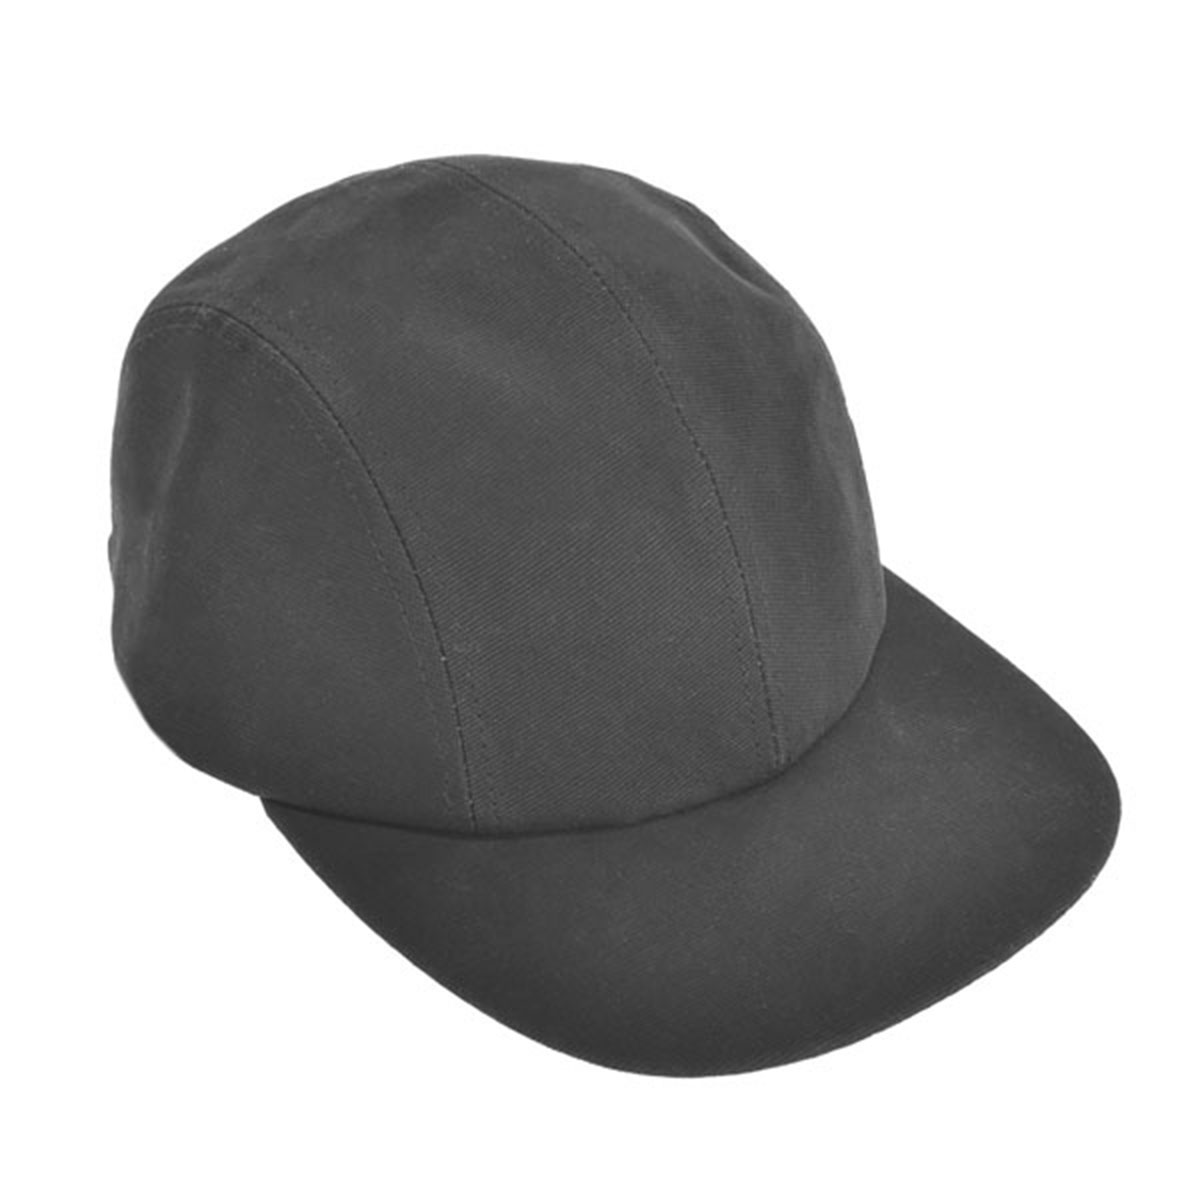 ケンゾー KENZO キャップ 帽子 5AC5AC401F33 99 BLACK ブラック ブランド キャップ 人気 おしゃれ クリスマスプレゼント 新品 キャップ